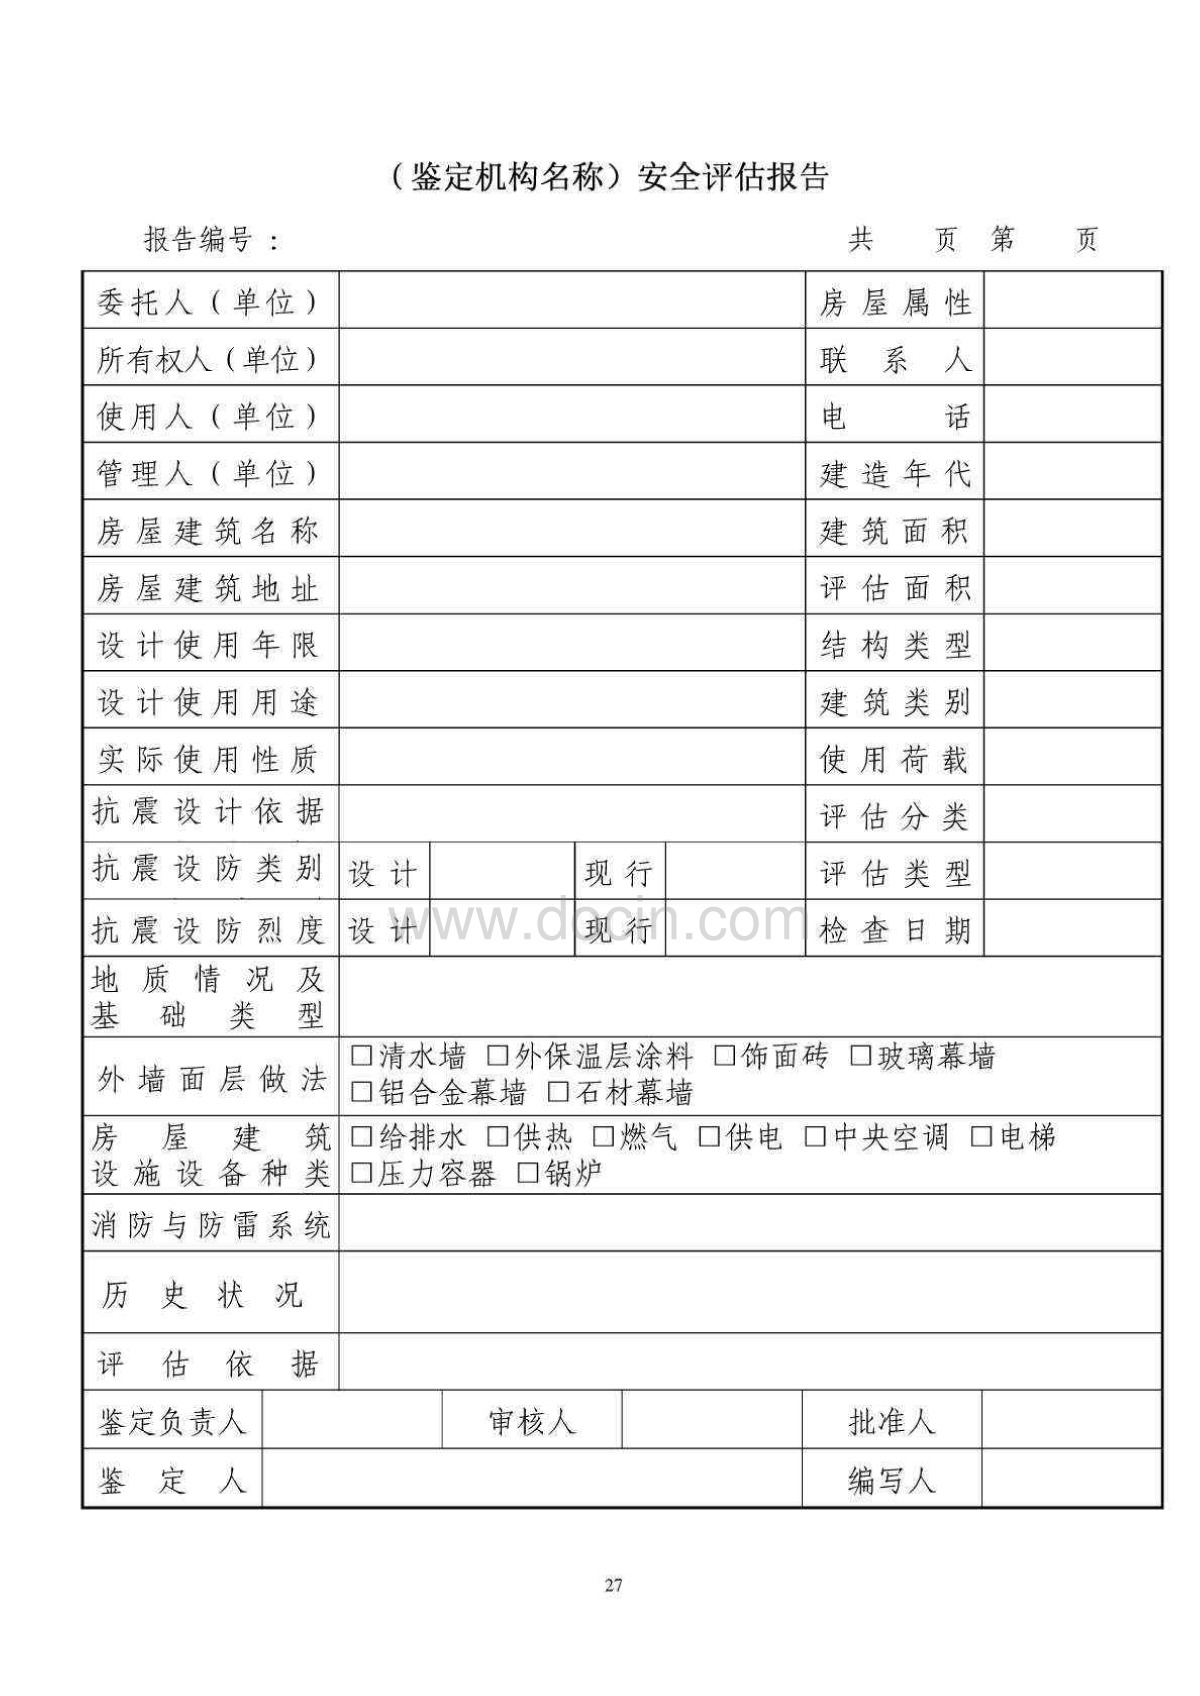 卓越建筑:北京市房屋建筑安全评估与鉴定管理